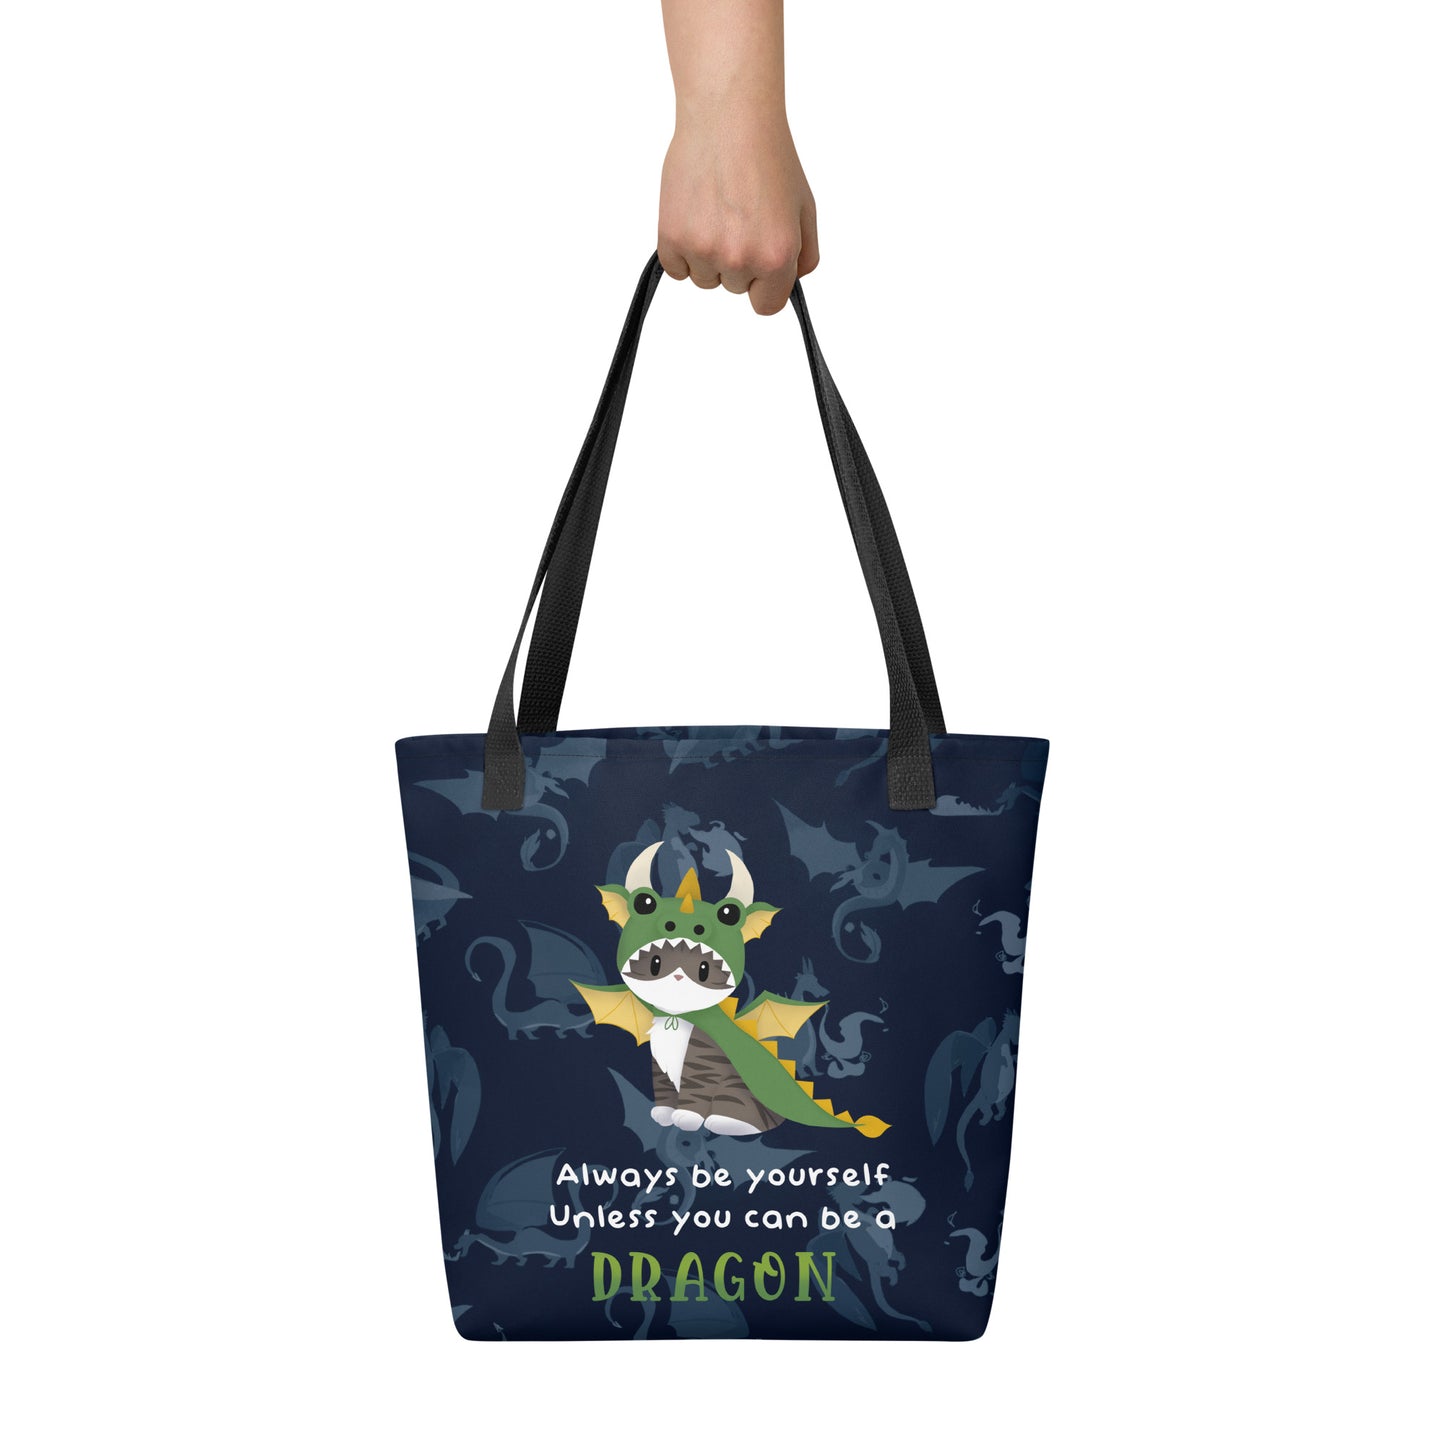 Jack the Dragon Kitty Tote Bag